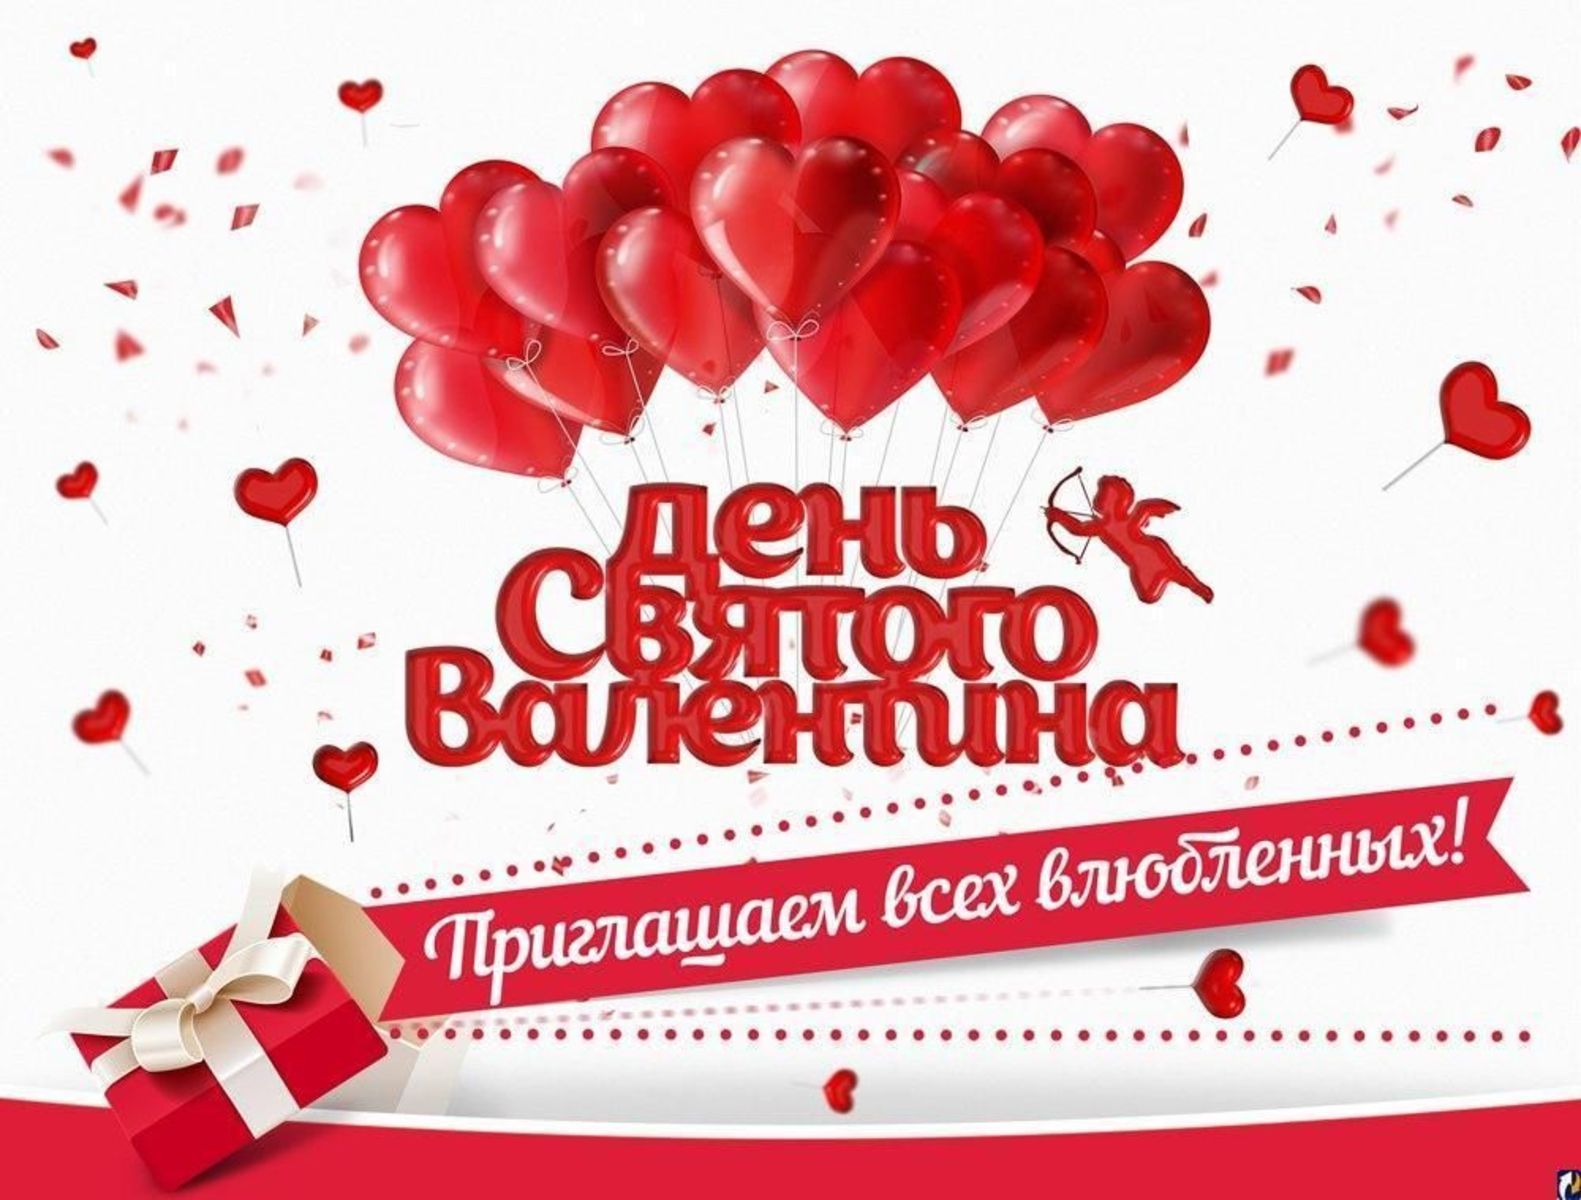 Какой сегодня праздник в россии 14 февраля. С днем влюбленных. 14 Февраля день влюбленных. С днём всех влюблённых.